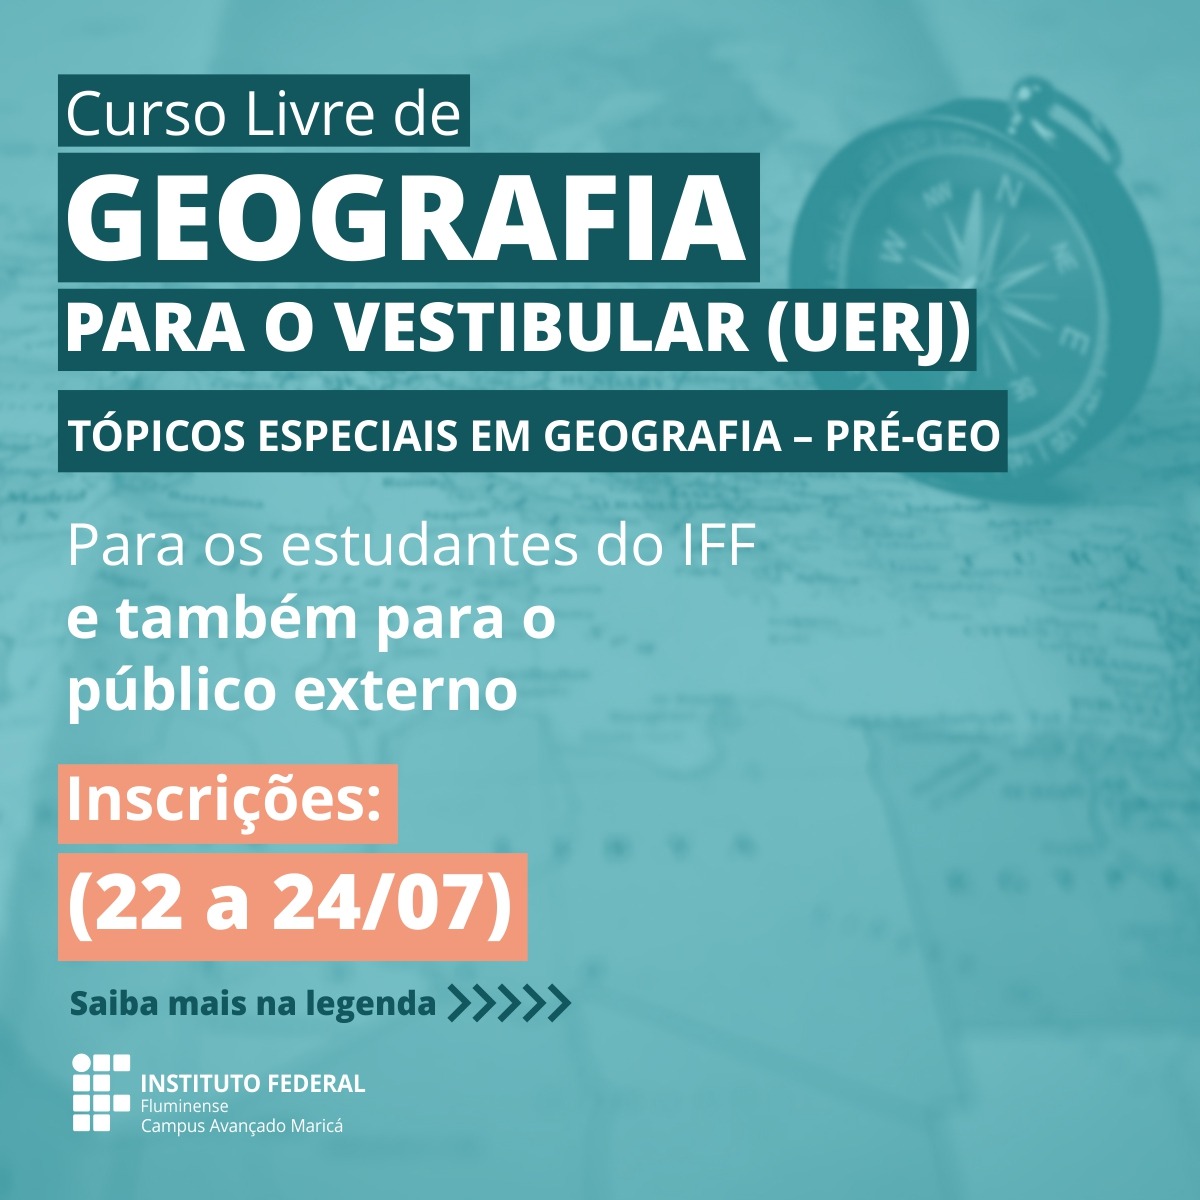 Curso de Geografia no IFF Maricá